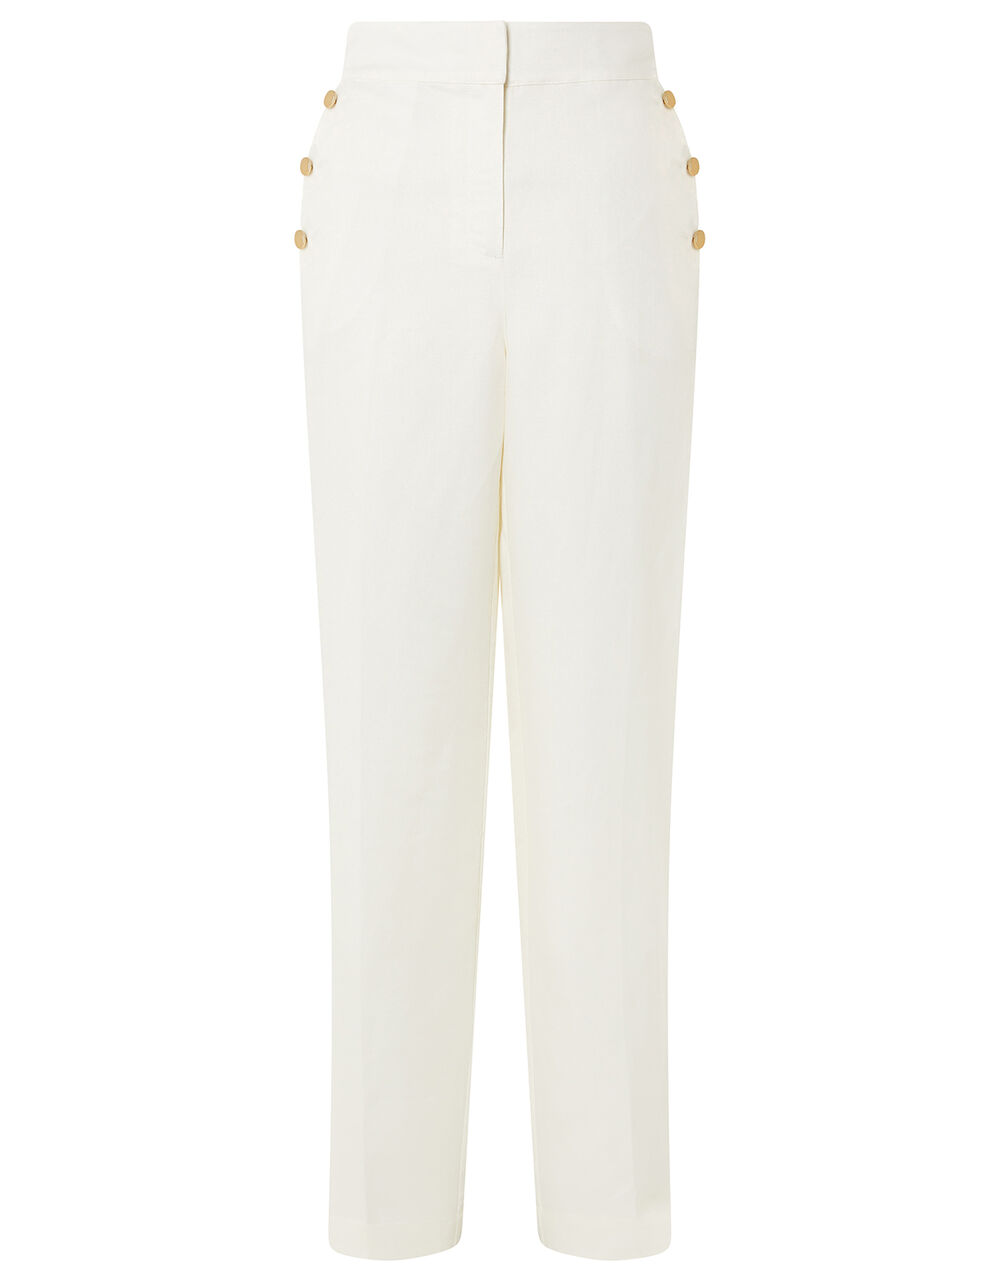 Smart Longer Length Trousers in Linen Blend White